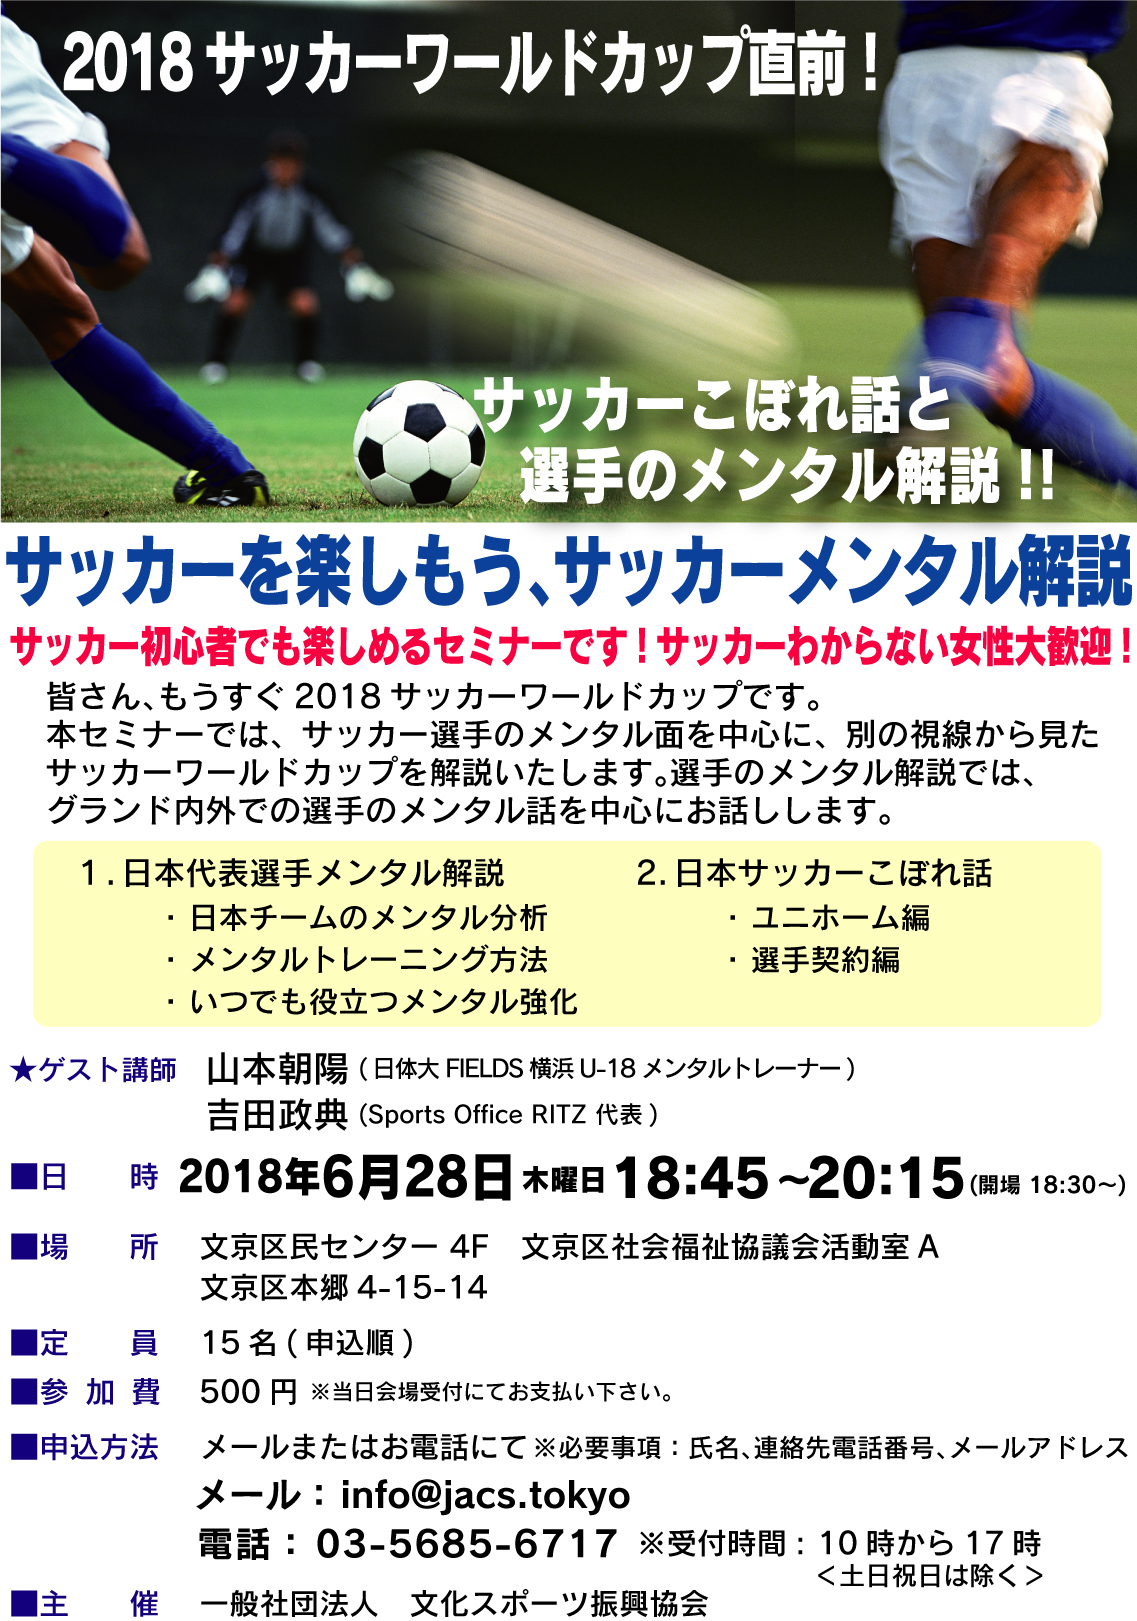 サッカーワールドカップ直前 サッカーを楽しもう サッカーメンタル解説 文京区の地域活動情報サイト どっとフミコム